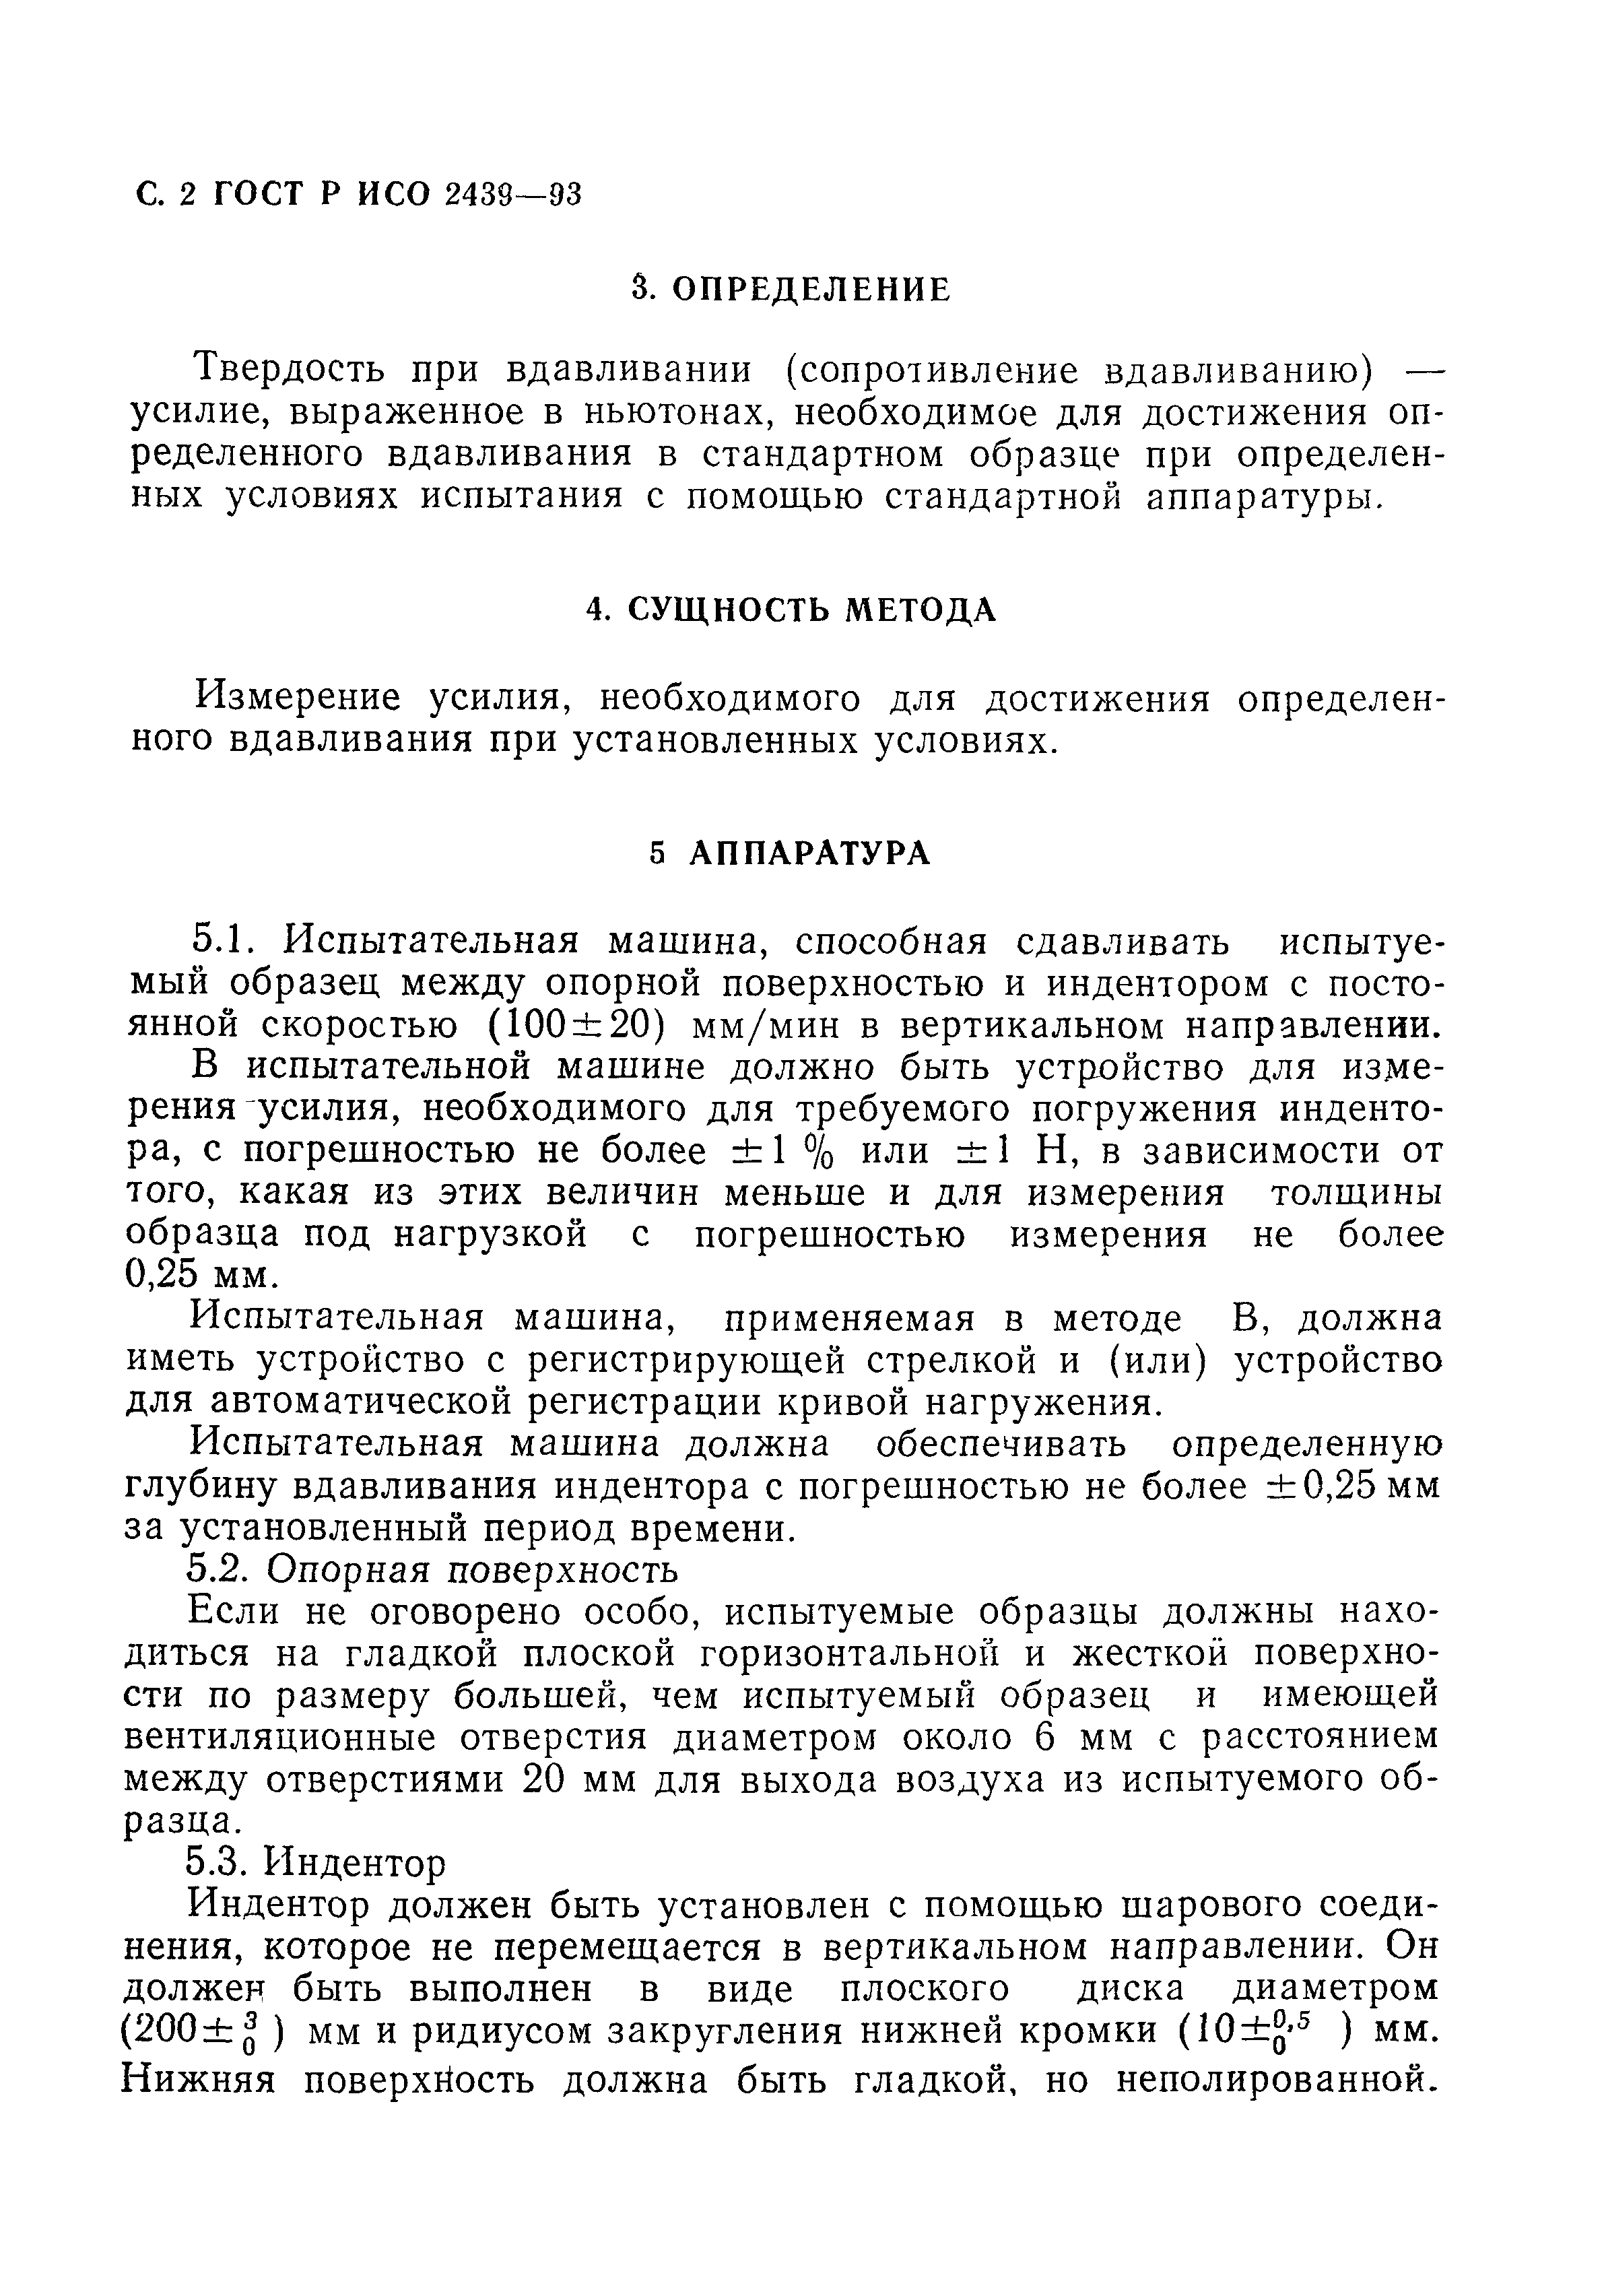 ГОСТ Р ИСО 2439-93